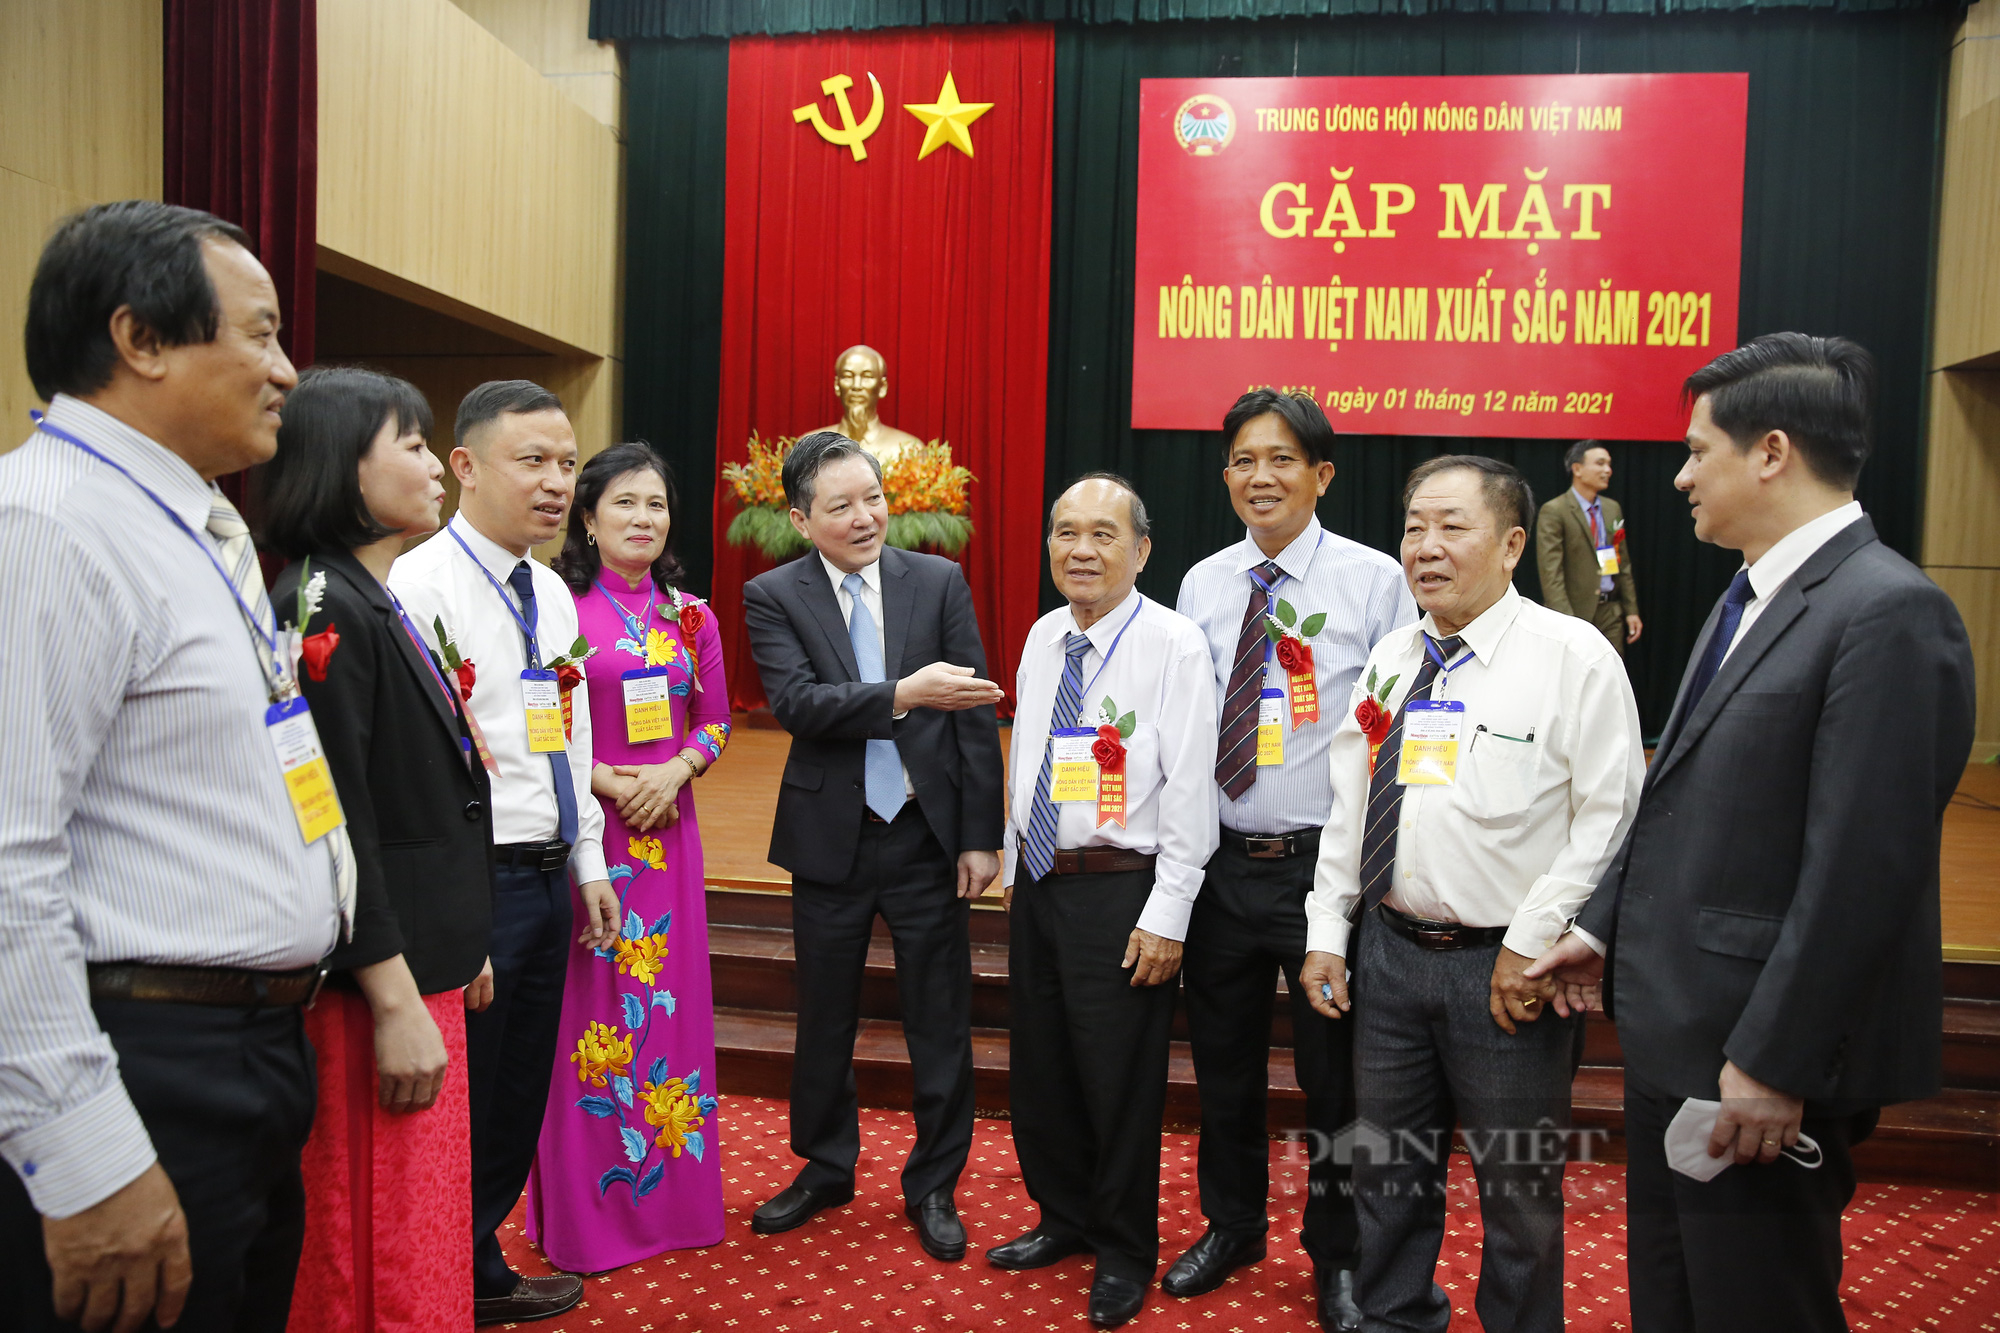 Ảnh: Thường trực Trung ương Hội Nông dân Việt Nam gặp mặt nông dân xuất sắc năm 2021 - Ảnh 8.